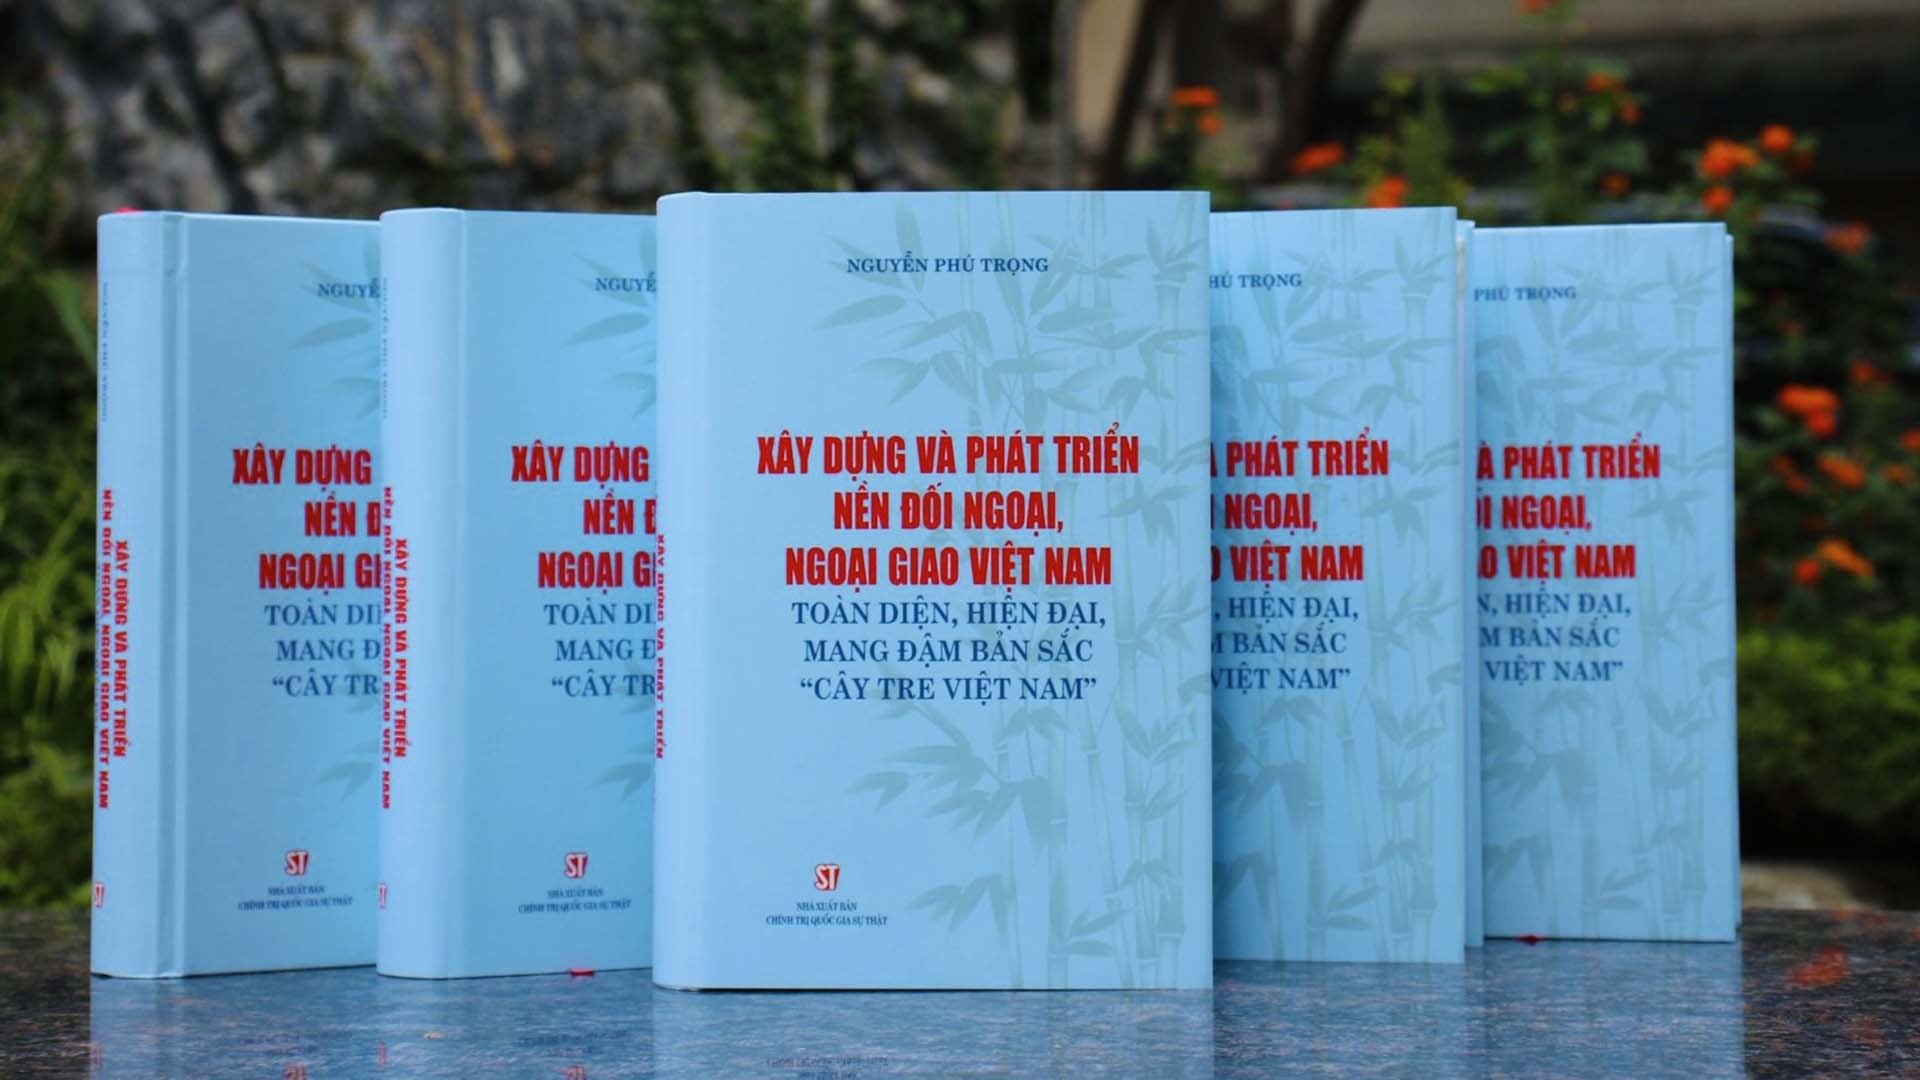 Cuốn sách “Xây dựng và phát triển nền đối ngoại, ngoại giao Việt Nam toàn diện, hiện đại, mang đậm bản sắc cây tre Việt Nam” của đồng chí Tổng Bí thư Nguyễn Phú Trọng.